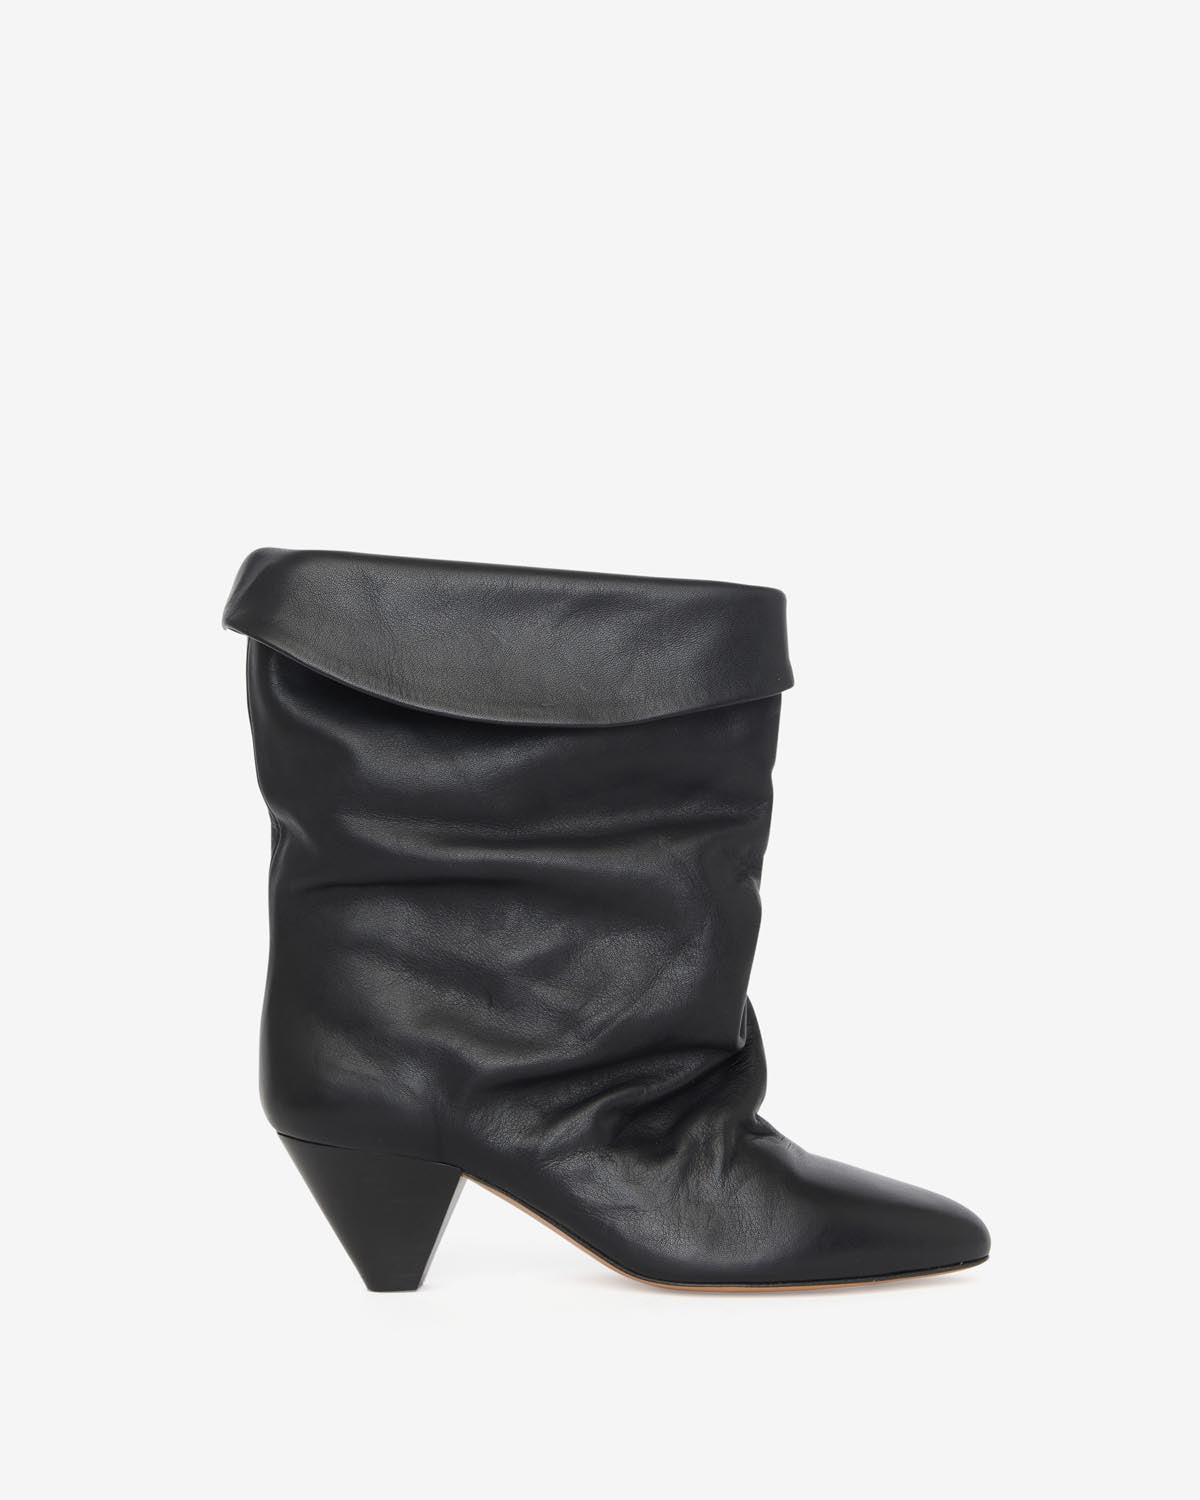 Ryska boots Woman Black 5